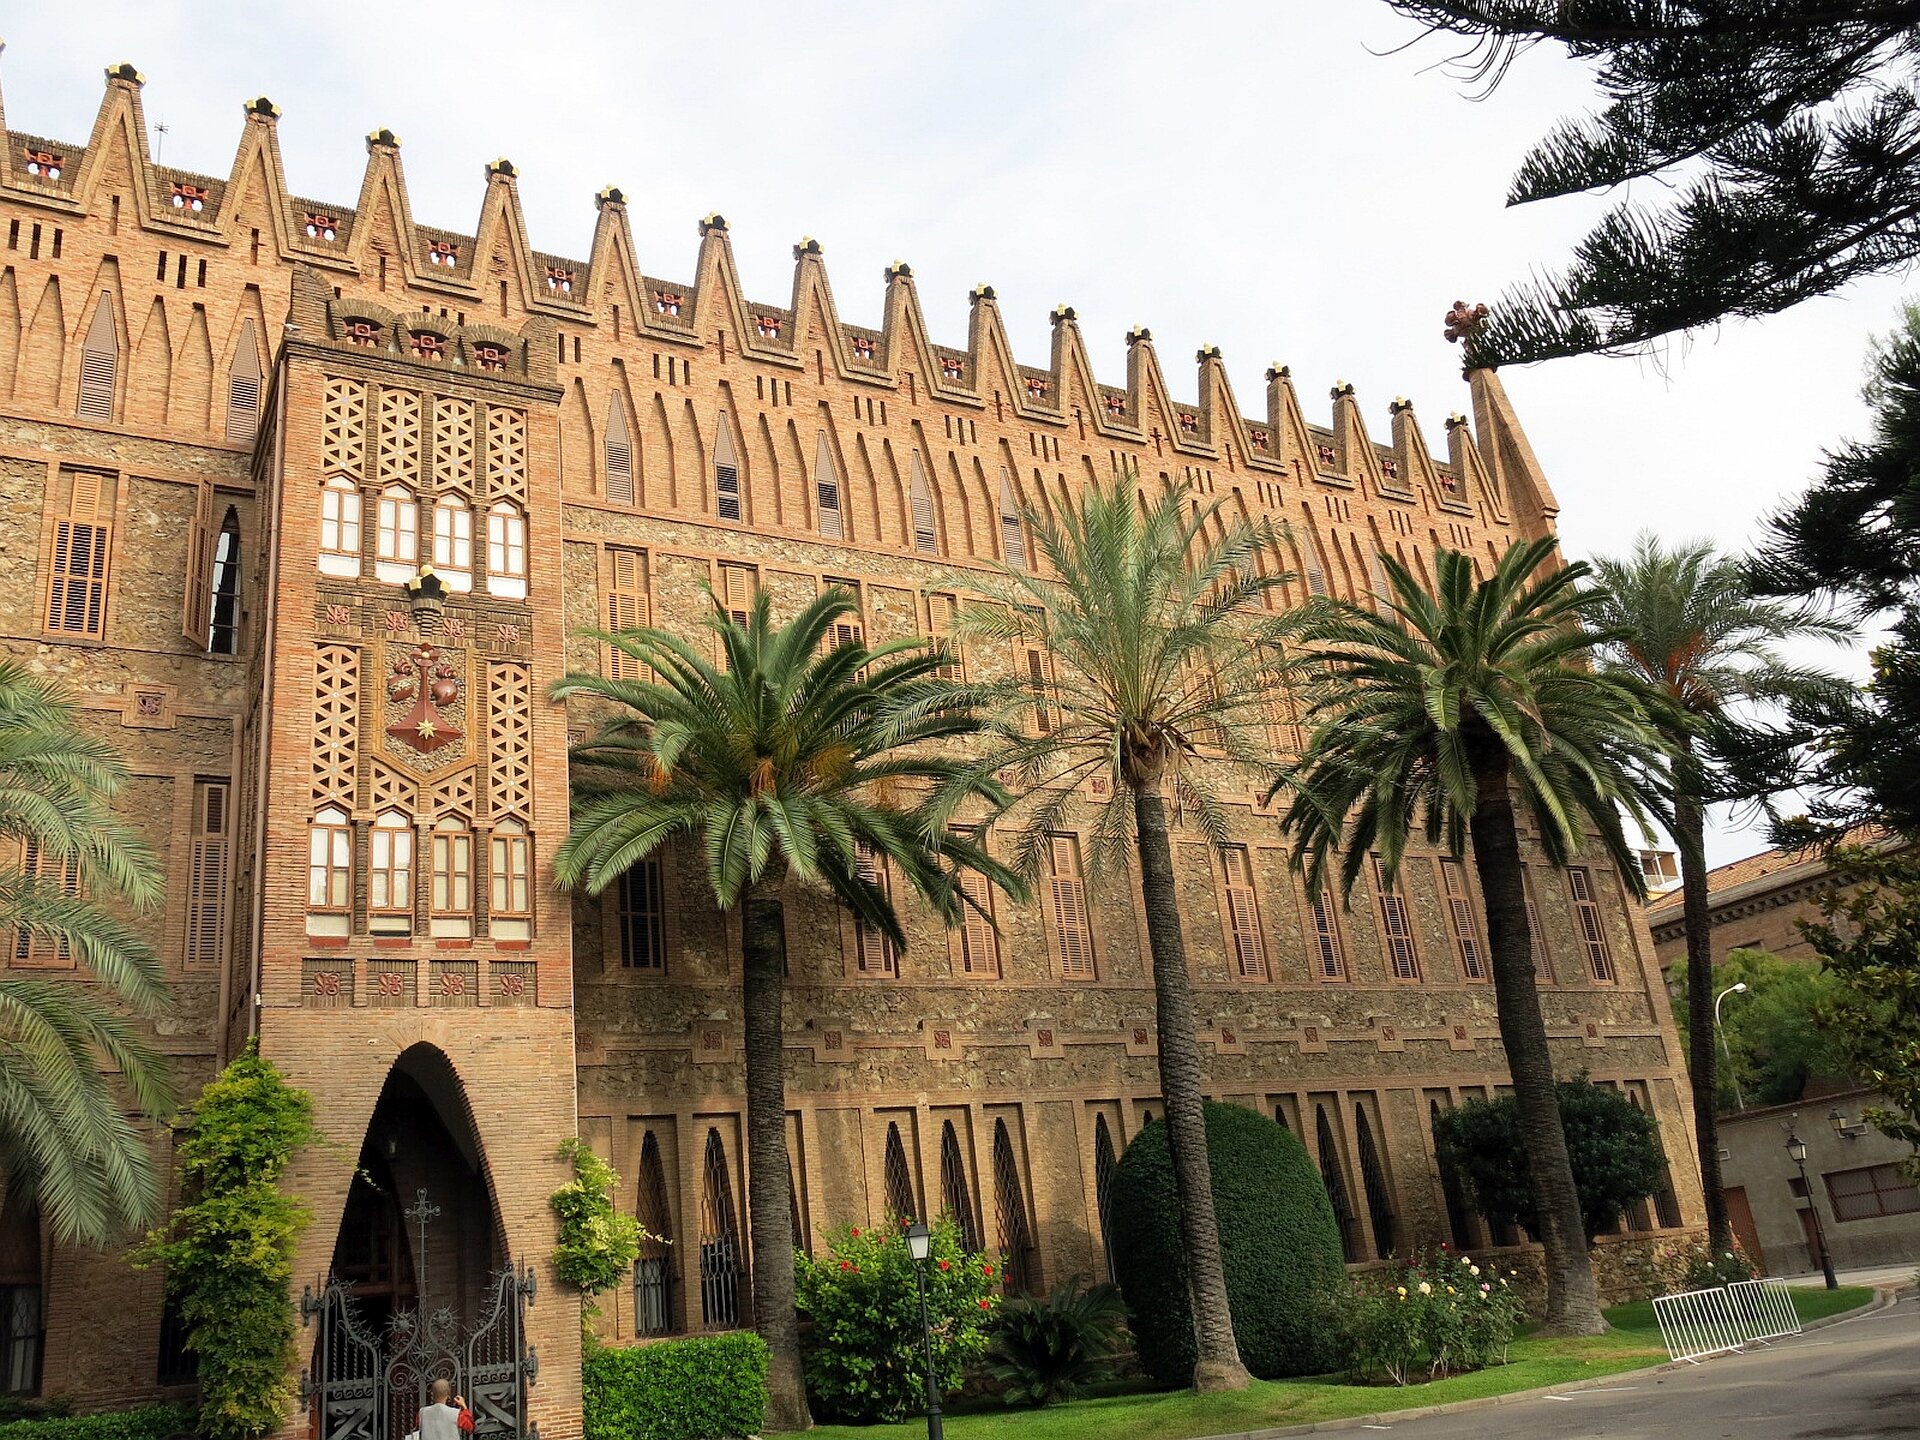 Ilustracja interaktywna o kształcie poziomego prostokąta przedstawia fotografię Kolegium Teresjańskie w Barcelonie zaprojektowanego przez Antonio Gaudiego. Budowla zbudowana jest z cegły oraz posiada elementy ceramiki. Kształt budynku jest prostokątny, cały przyozdobiony ceglanymi pinaklami oraz ukoronowany krzyżem Gaudiego i herbami przedstawiającymi figury Zakonu Terezjańskiego. Przed budowlą znajduje się trawnik z krzewami i palmami. 